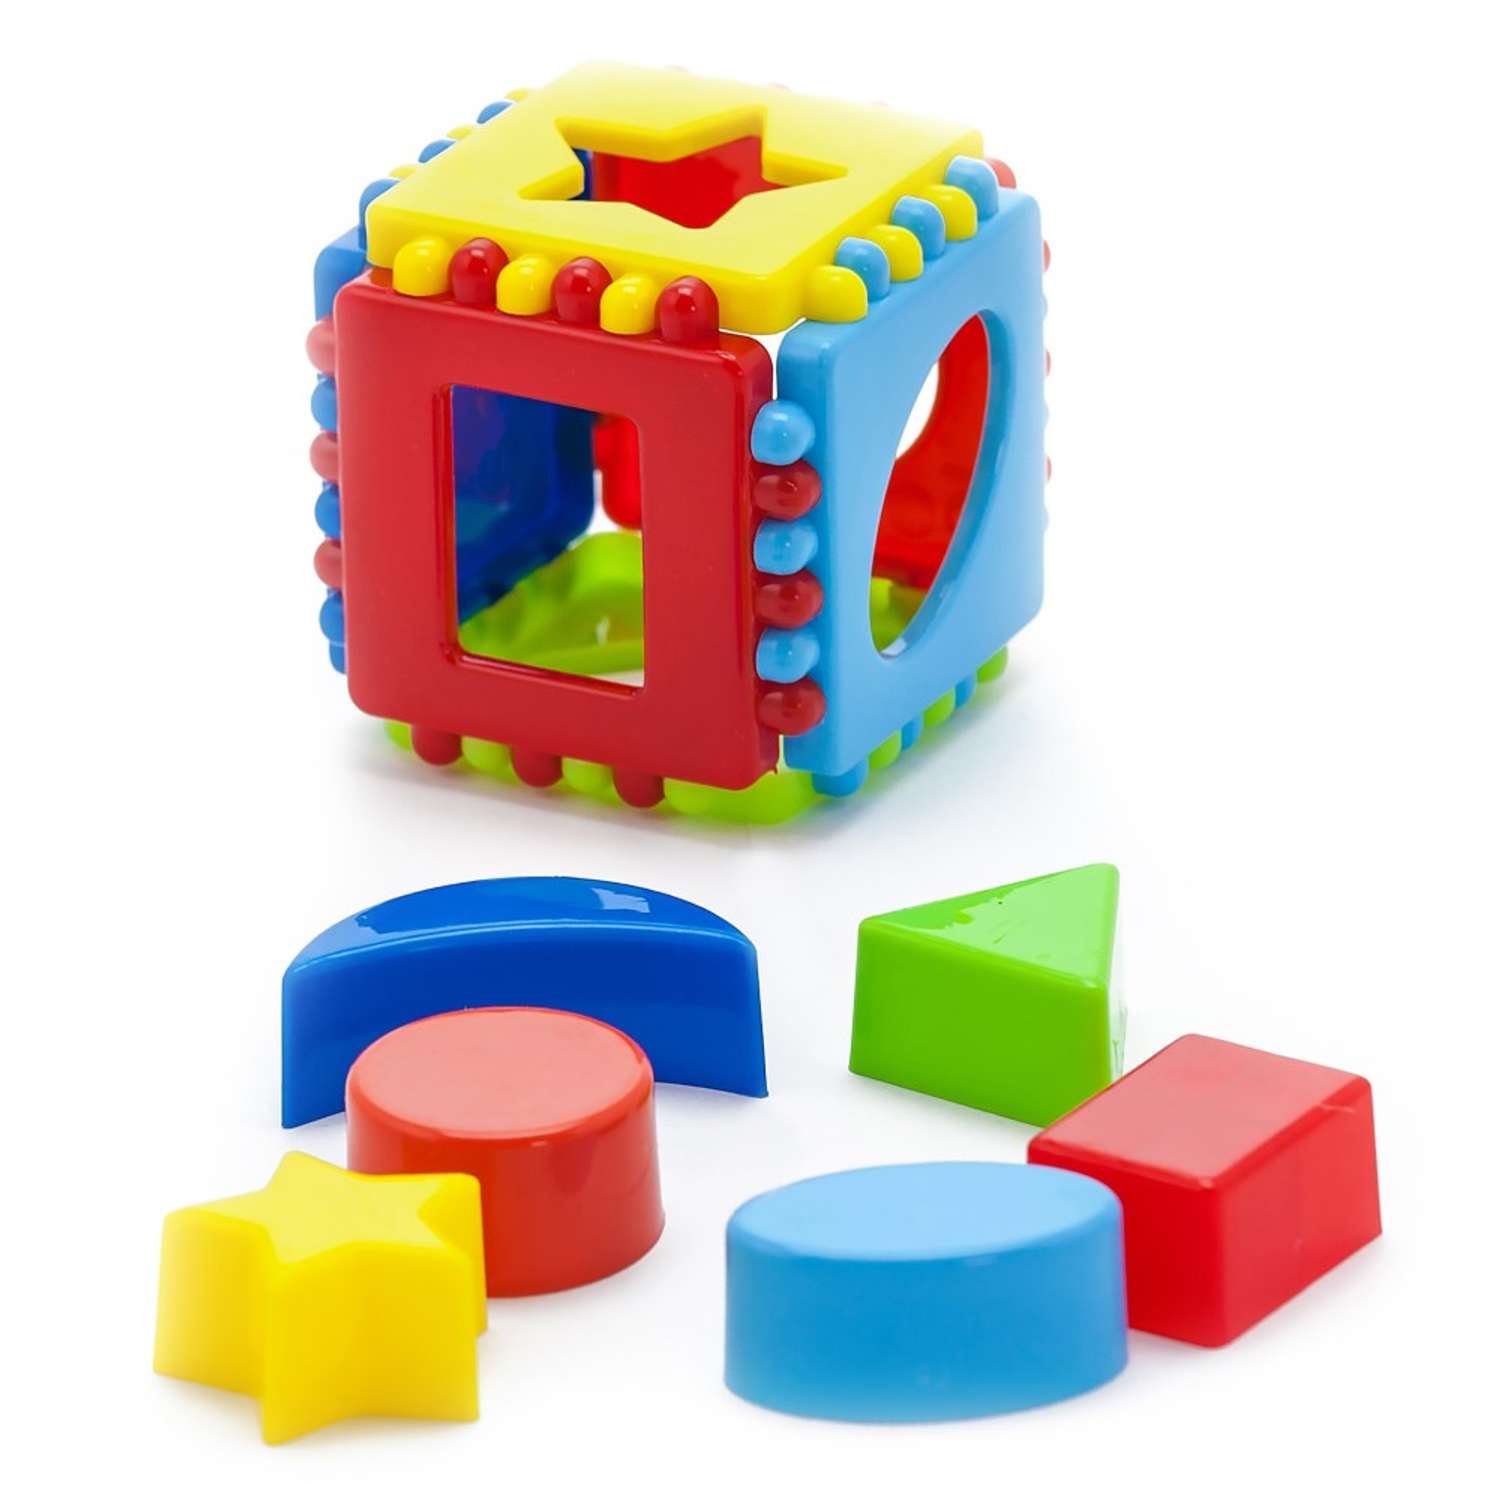 Развивающие игрушки БИПЛАНТ конструктор для малышей Кноп-Кнопыч 114 деталей + Сортер кубик малый + Команда КВА - фото 10